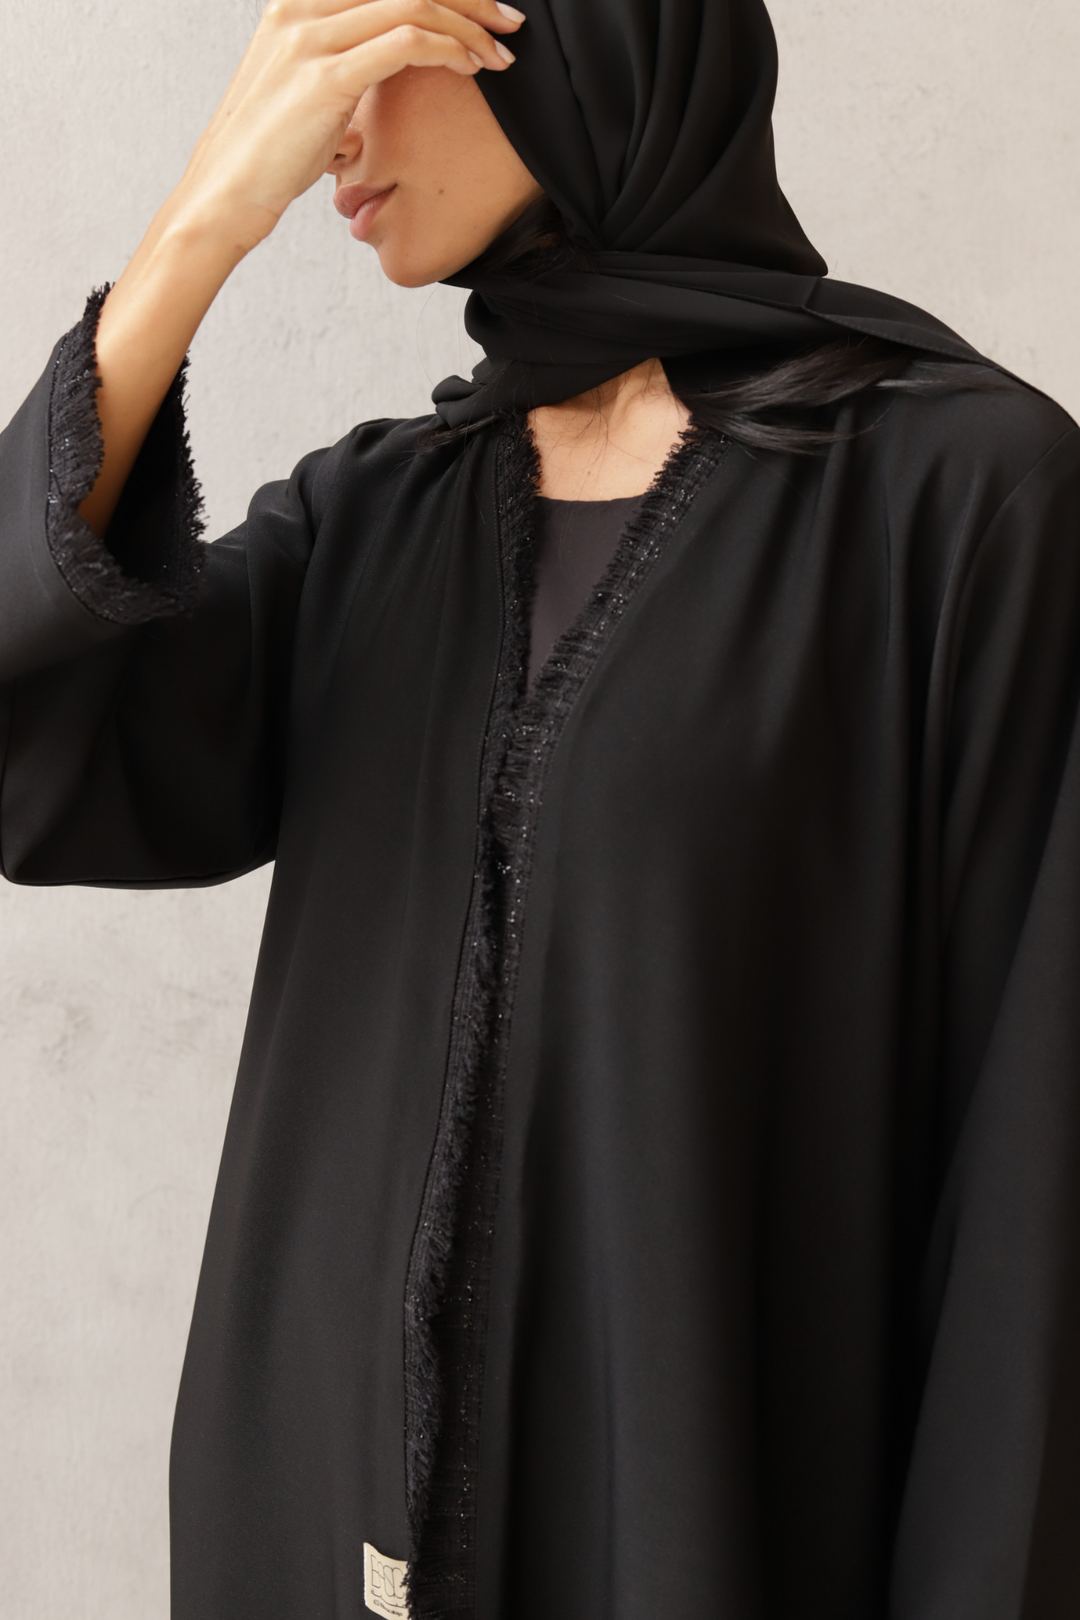 Basic Tweed (Black Abaya)